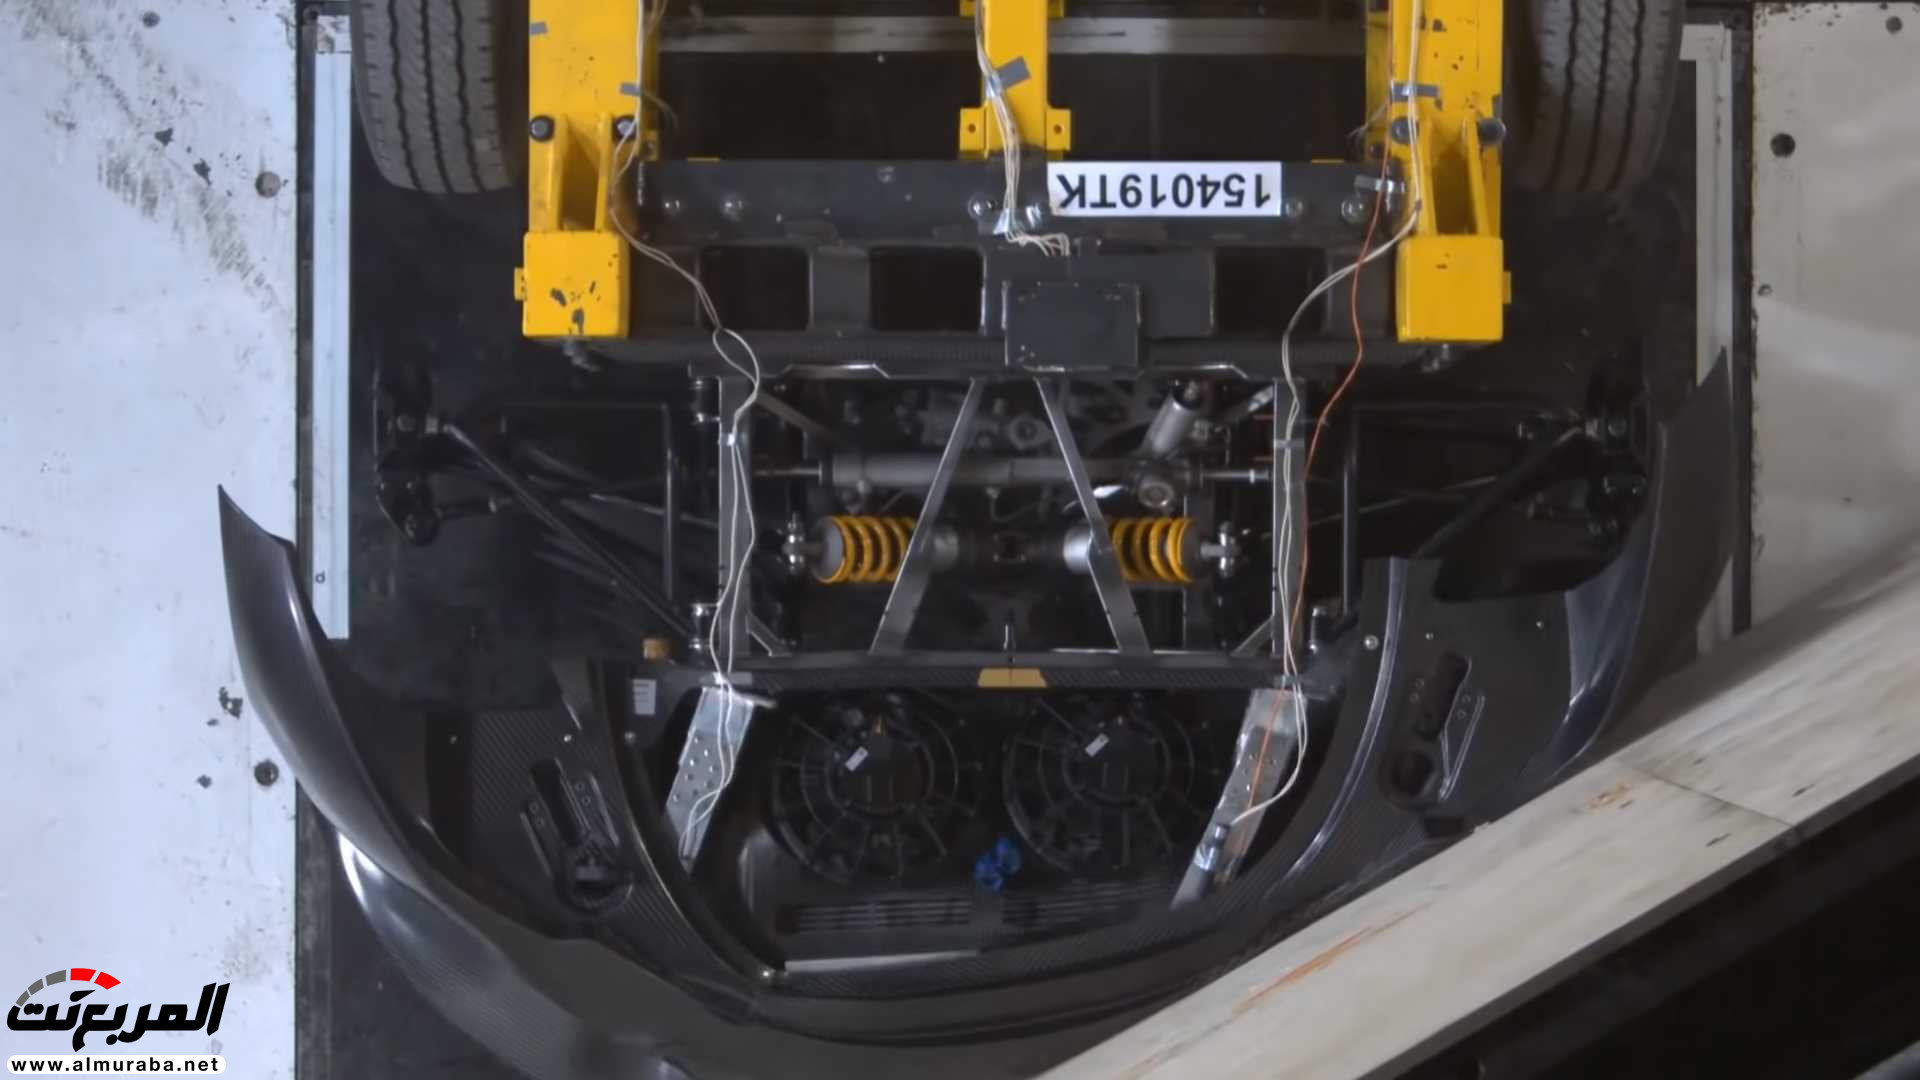 "بالفيديو" اختبار تصادم سيارة كوينيجسيج بقيمة 7.5 مليون ريال! 24